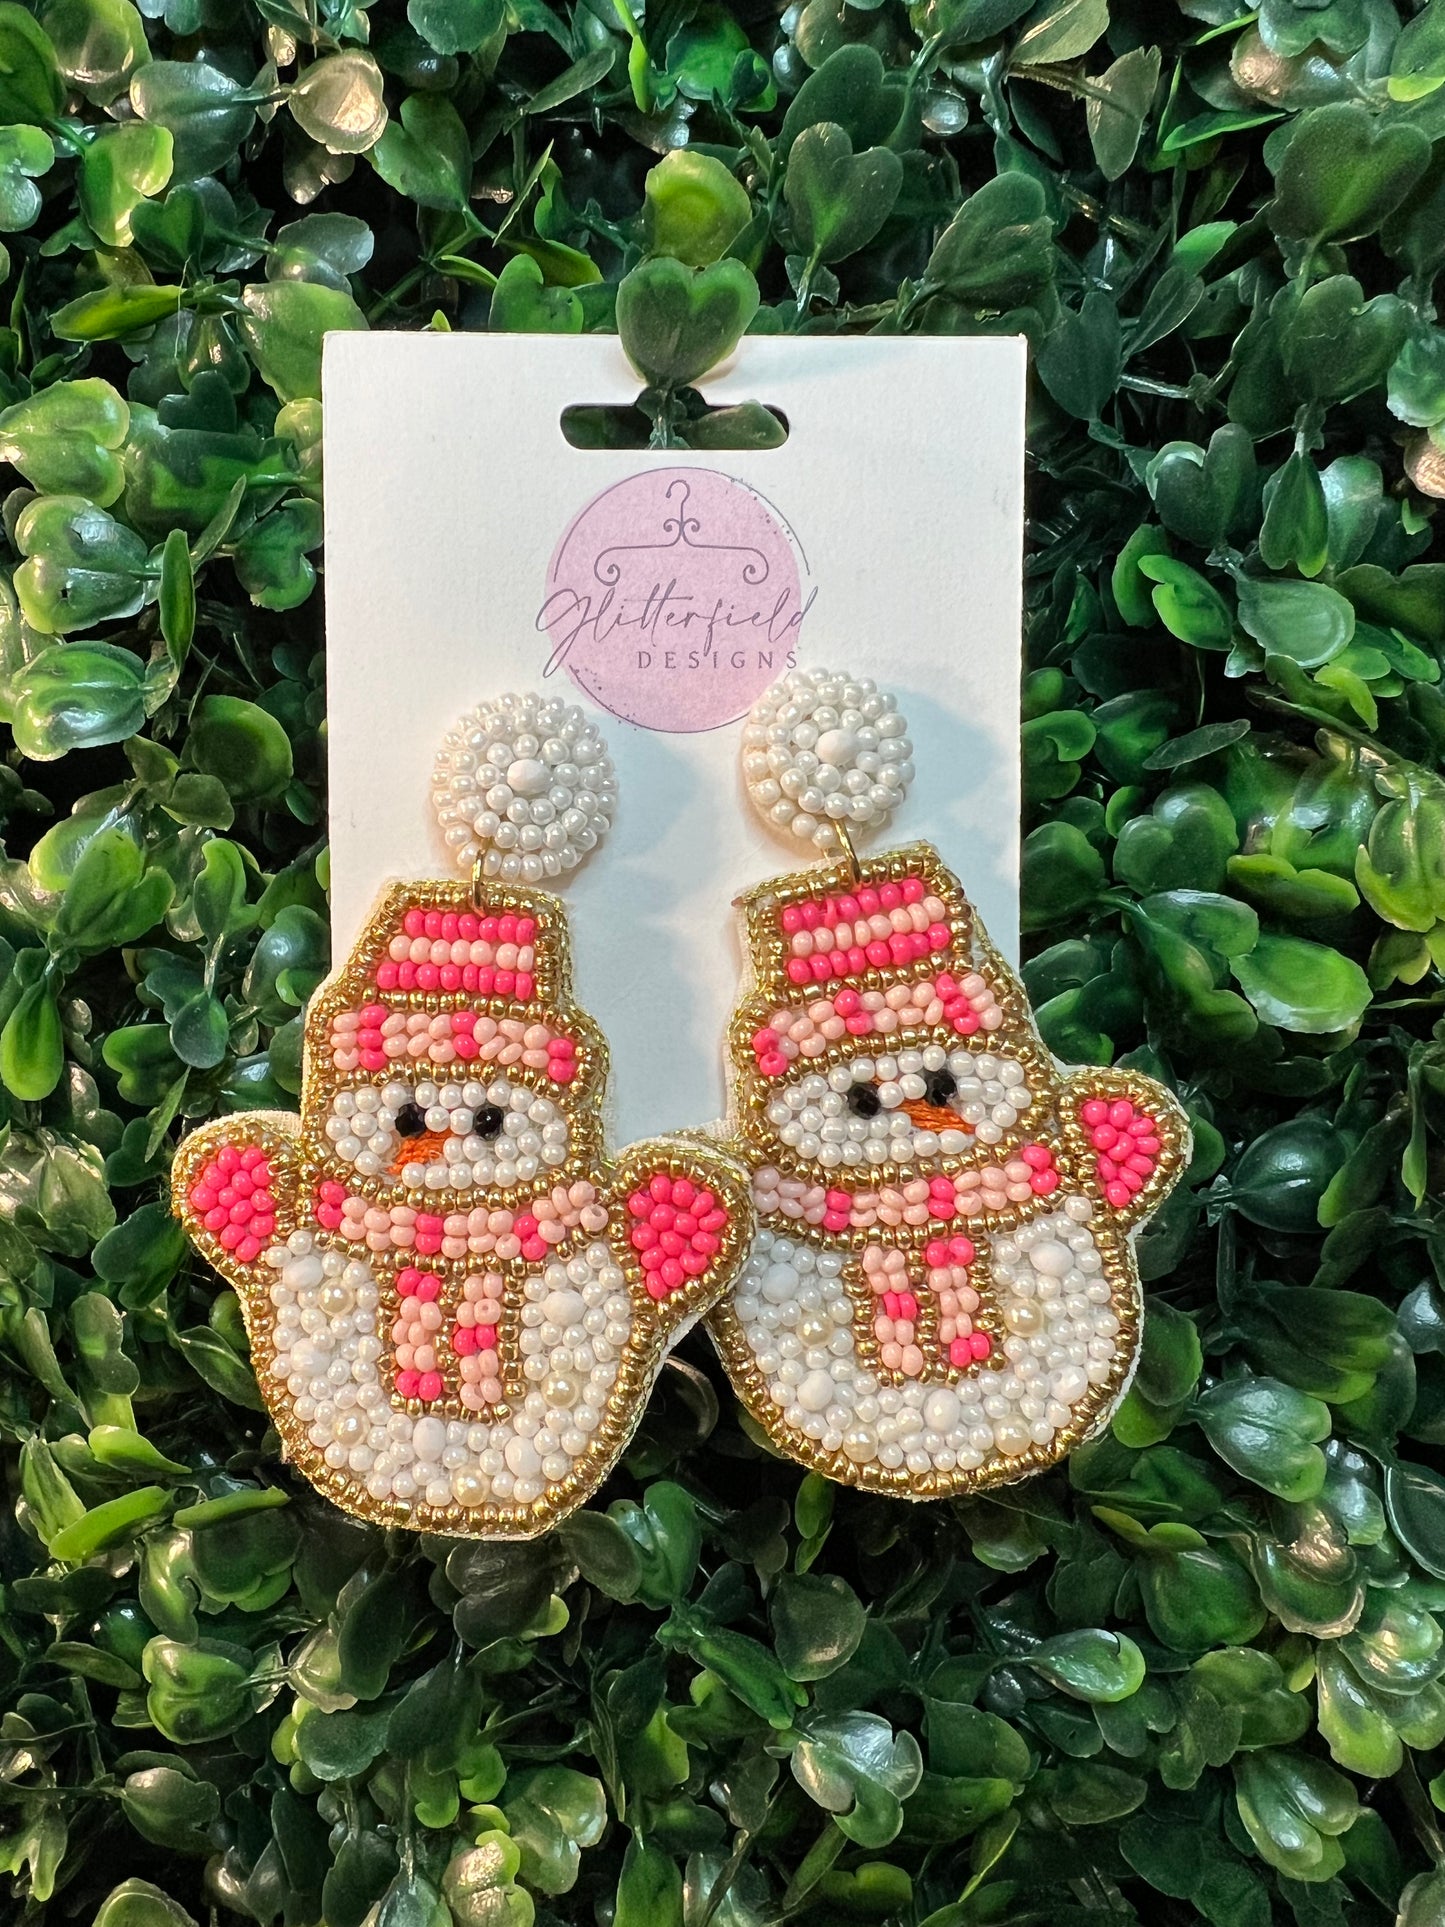 Pink Snowman Seed Bead Earrings